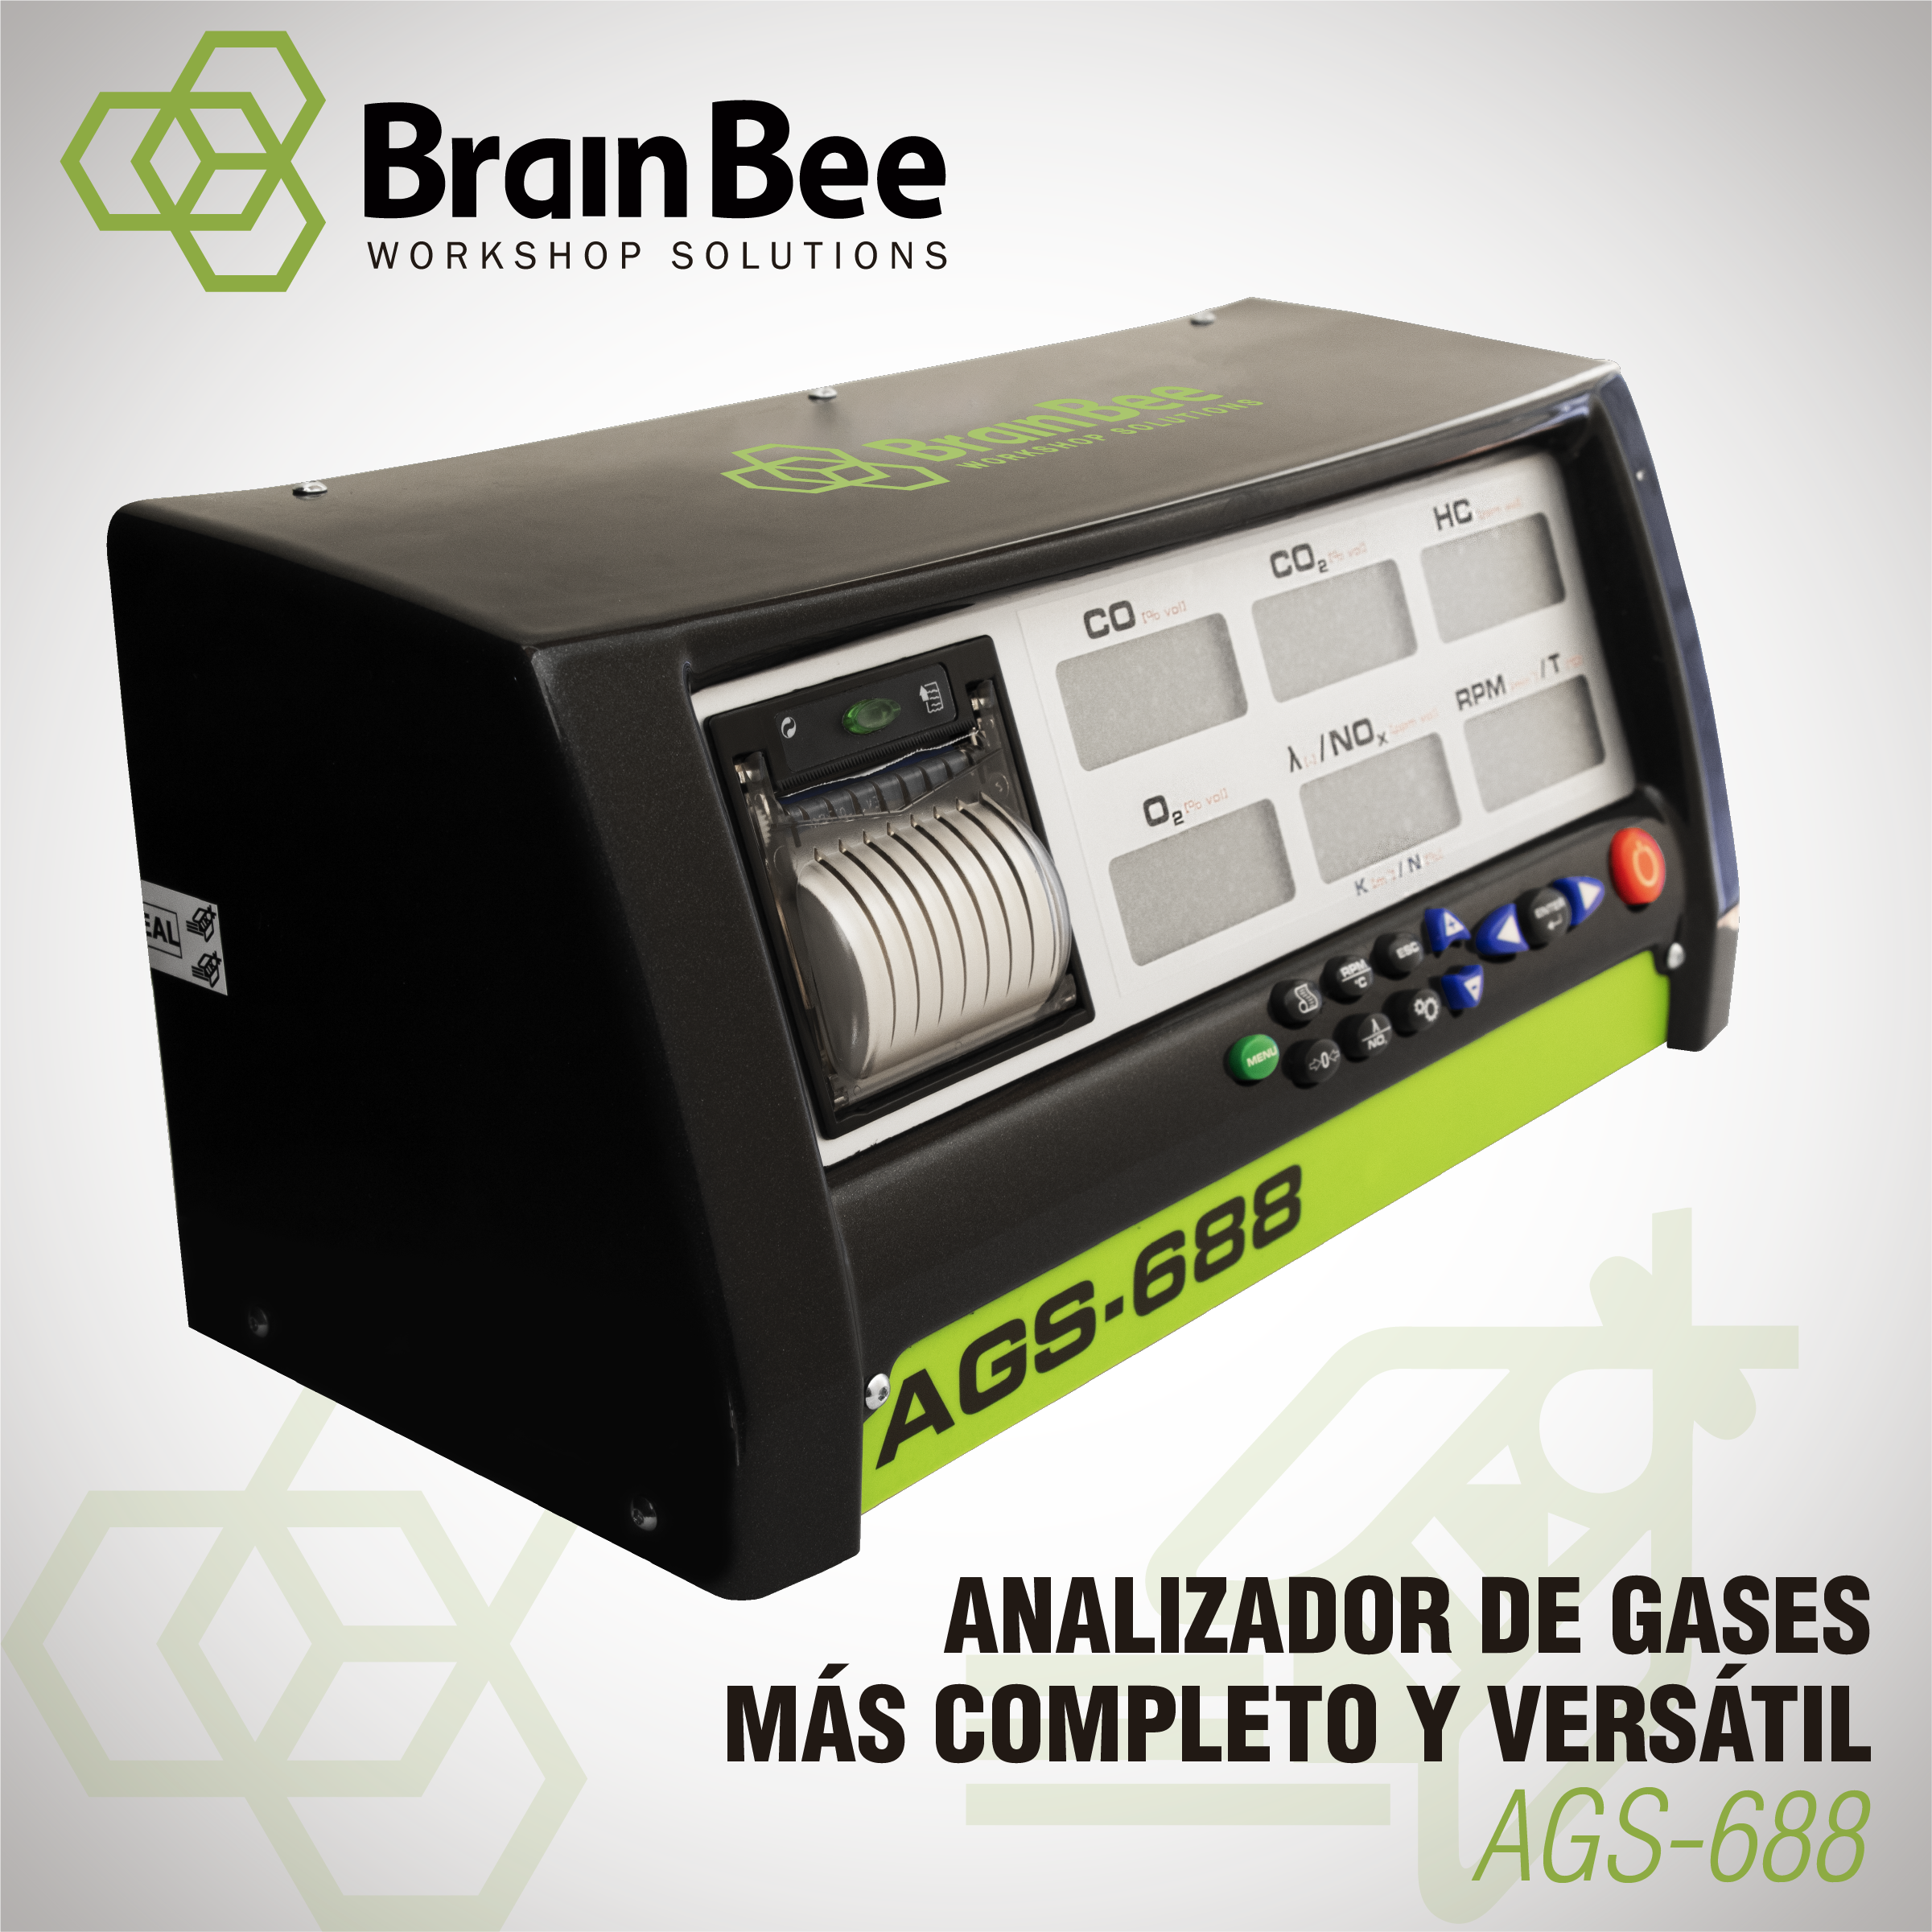 Analizador de Gases Brain Bee - Modelo AGS-688